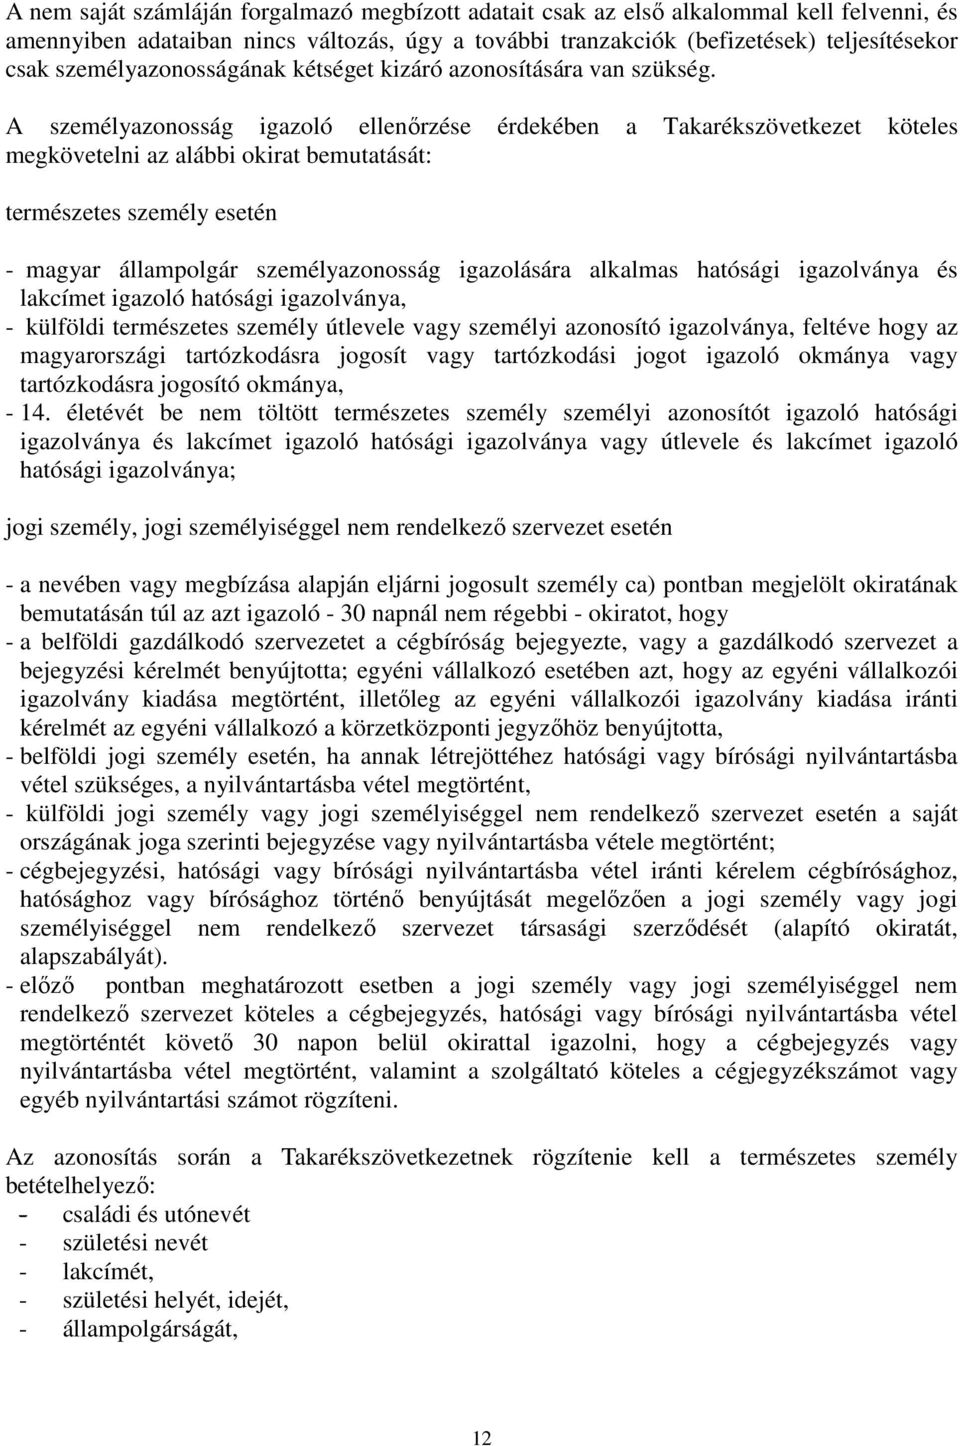 A személyazonosság igazoló ellenőrzése érdekében a Takarékszövetkezet köteles megkövetelni az alábbi okirat bemutatását: természetes személy esetén - magyar állampolgár személyazonosság igazolására